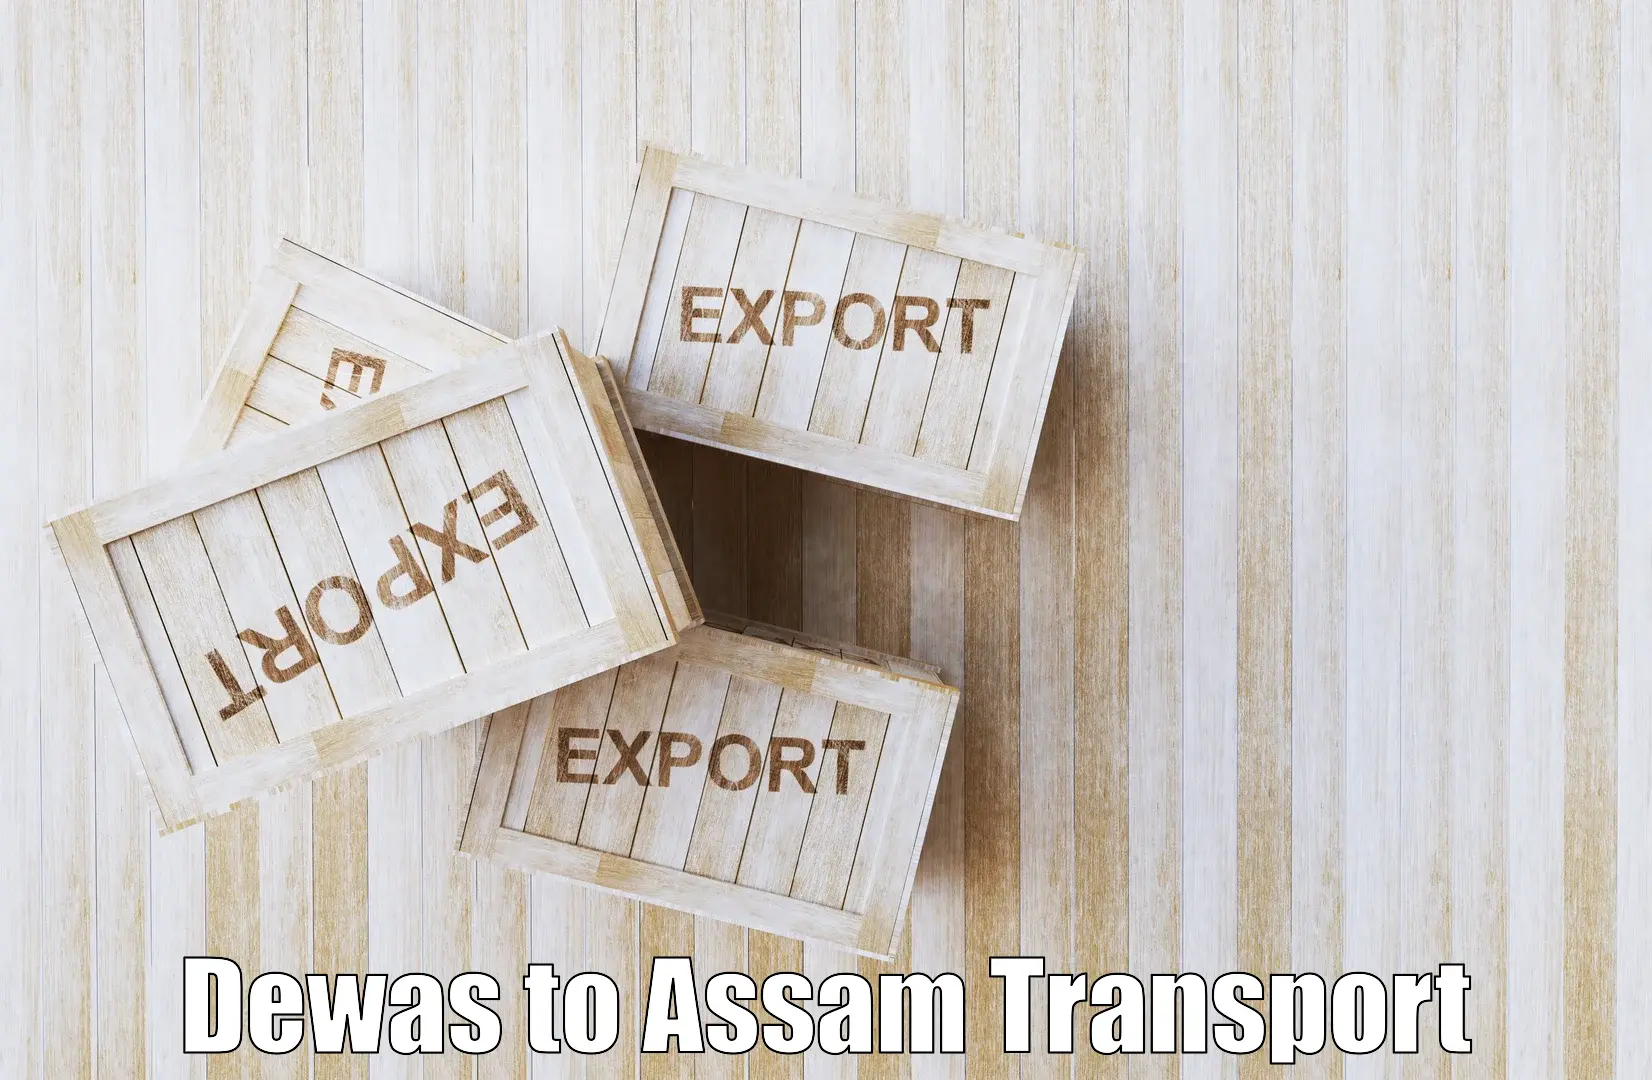 Furniture transport service Dewas to Gossaigaon